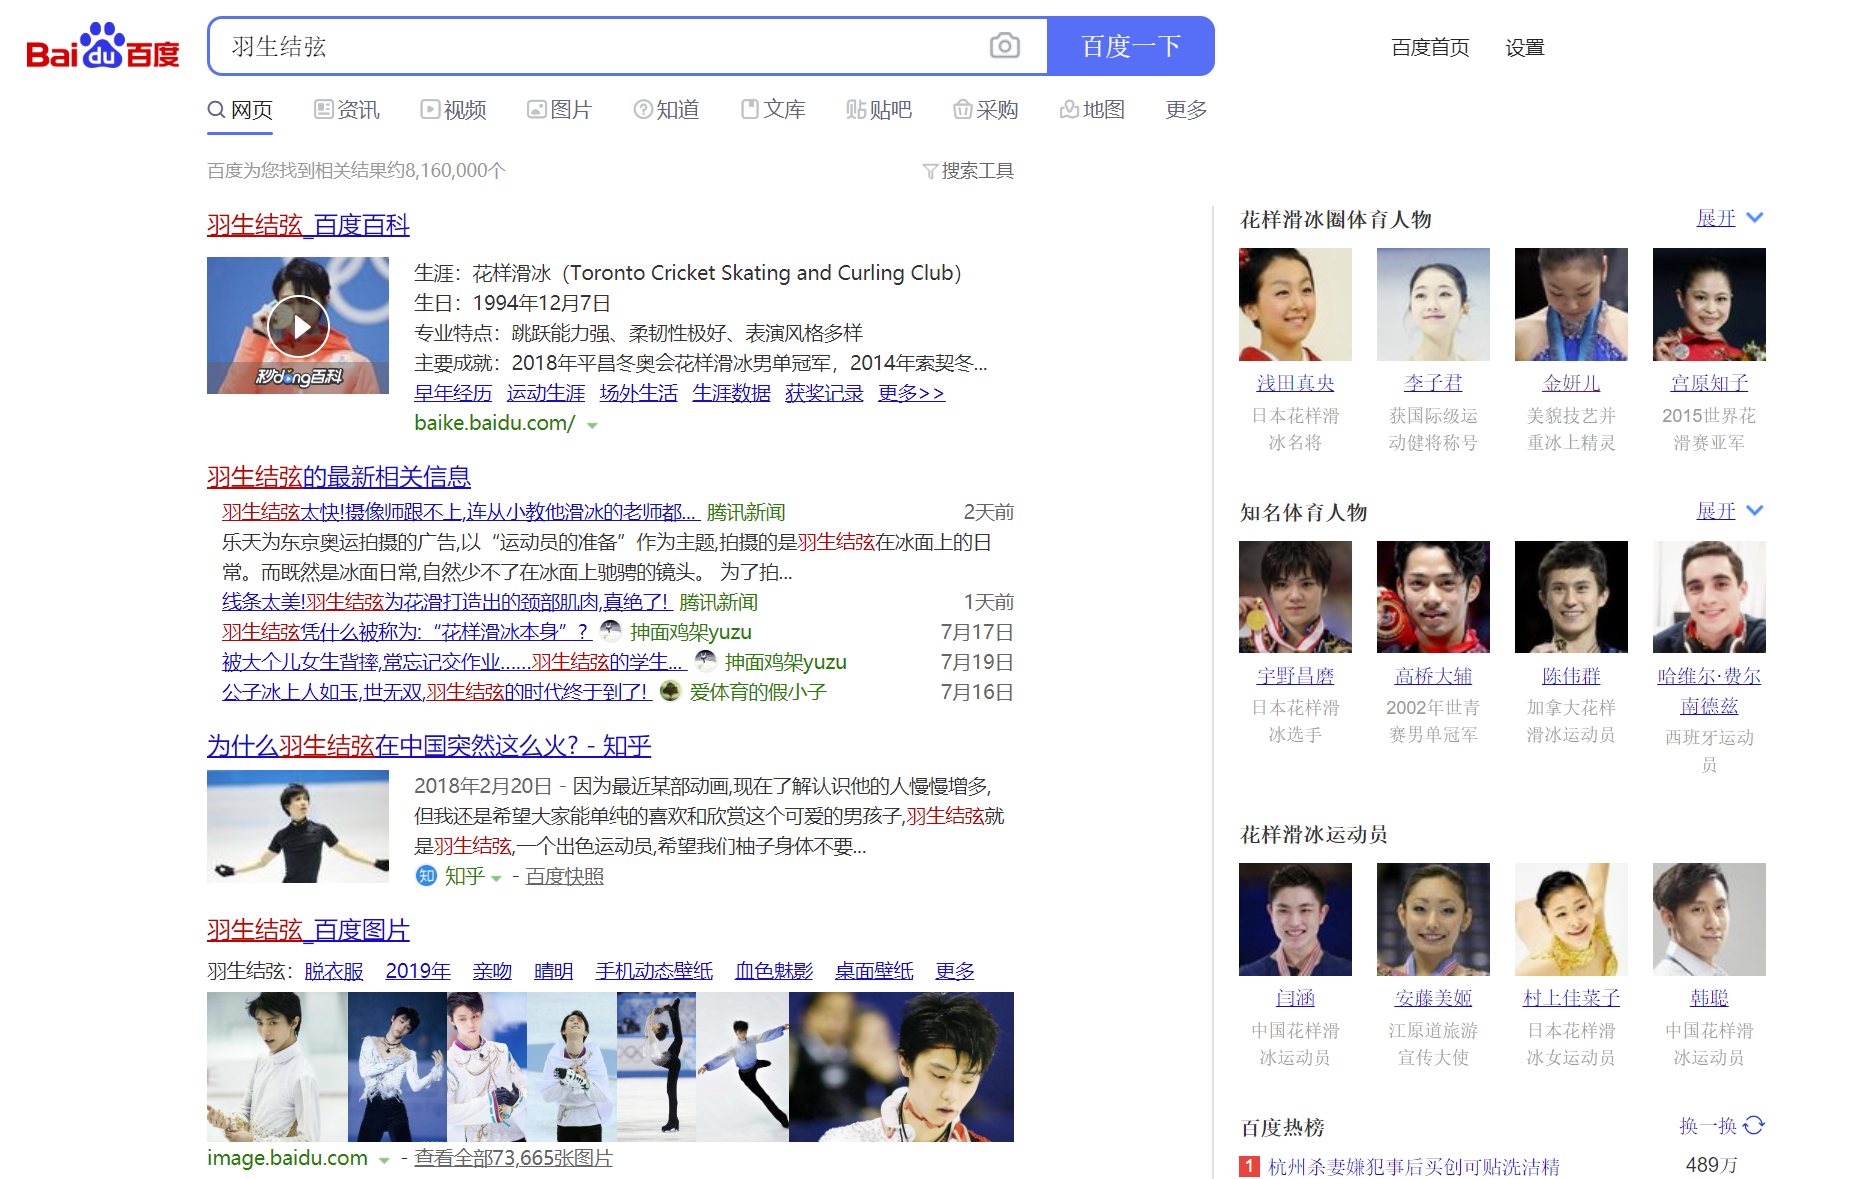 Король и Королева китайского интернета: статистика по поиску, новостям и интересу пользователей